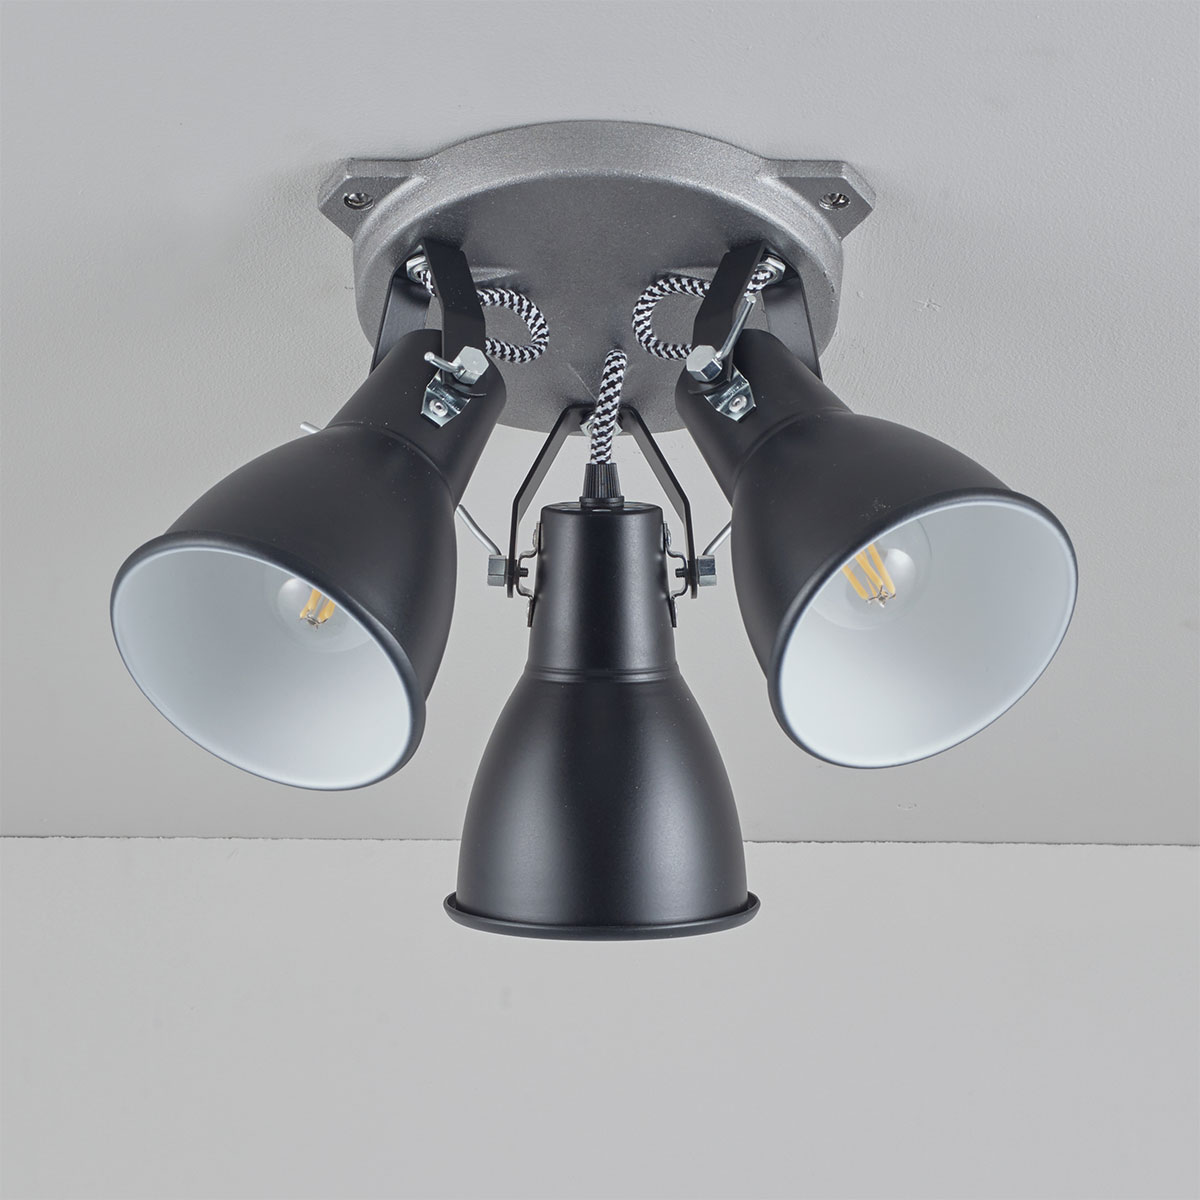 Dreifach-Deckenstrahler im Industrial-Look STIRRUP: Dreifach-Deckenleuchte im Scheinwerfer-Stil: Stirrup Triple Ceiling Light, hier in schwarz